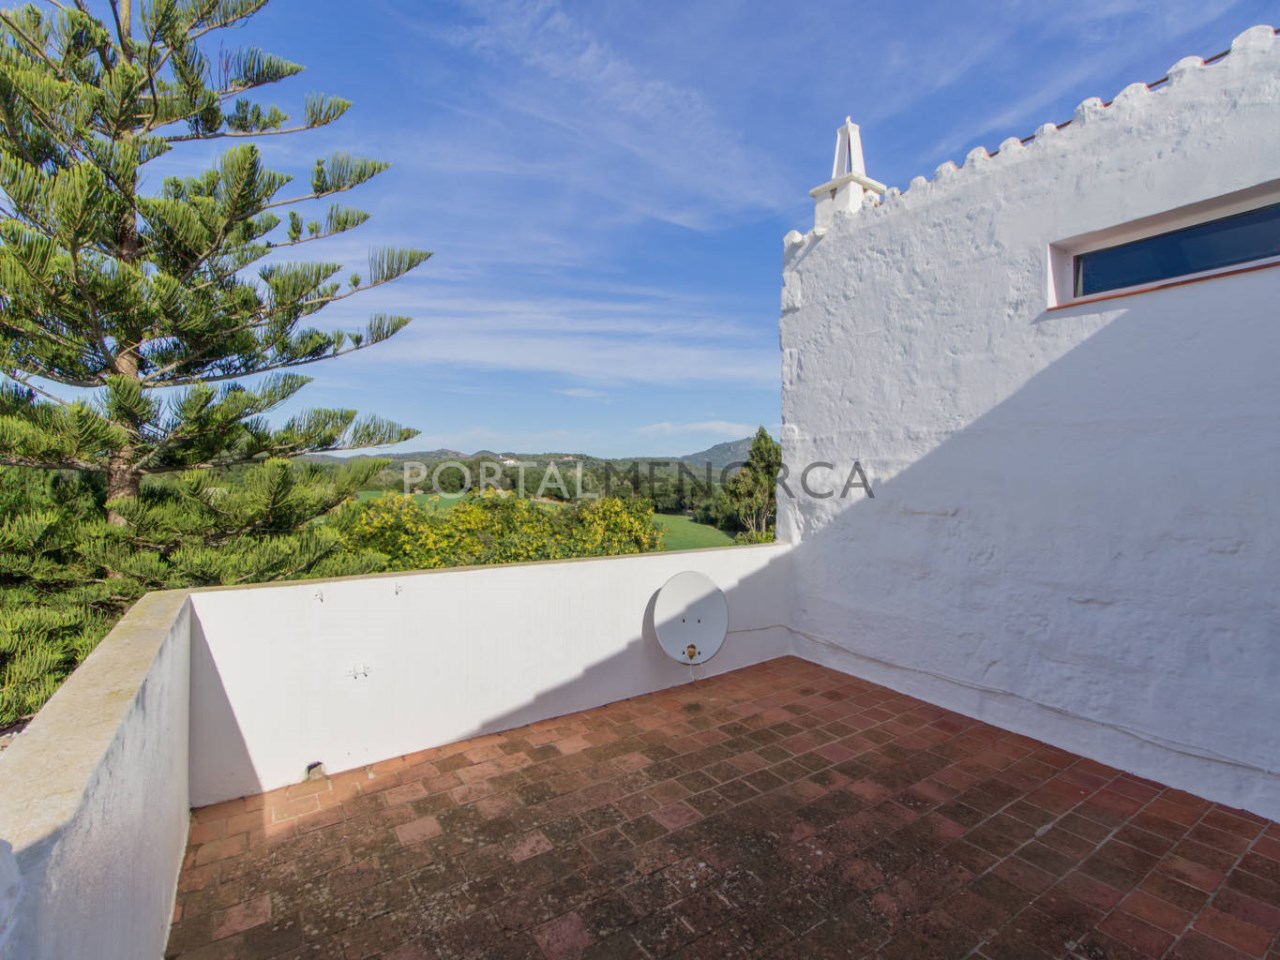 Casa de campo en venta en Menorca - Planta primera (16)